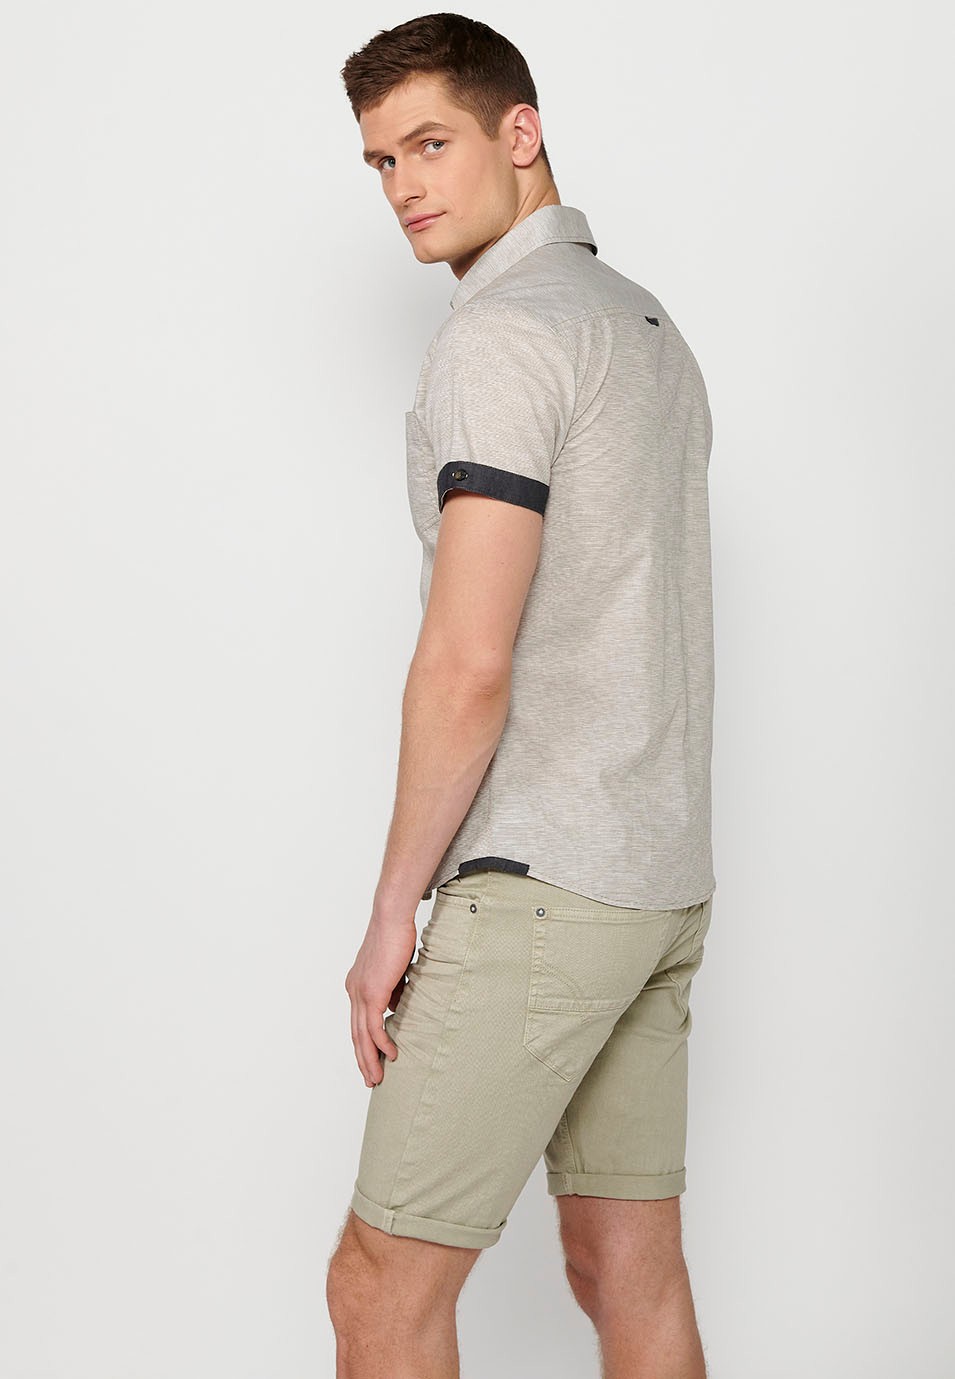 Camisa de manga corta de algodon, con botones, color gris para hombre